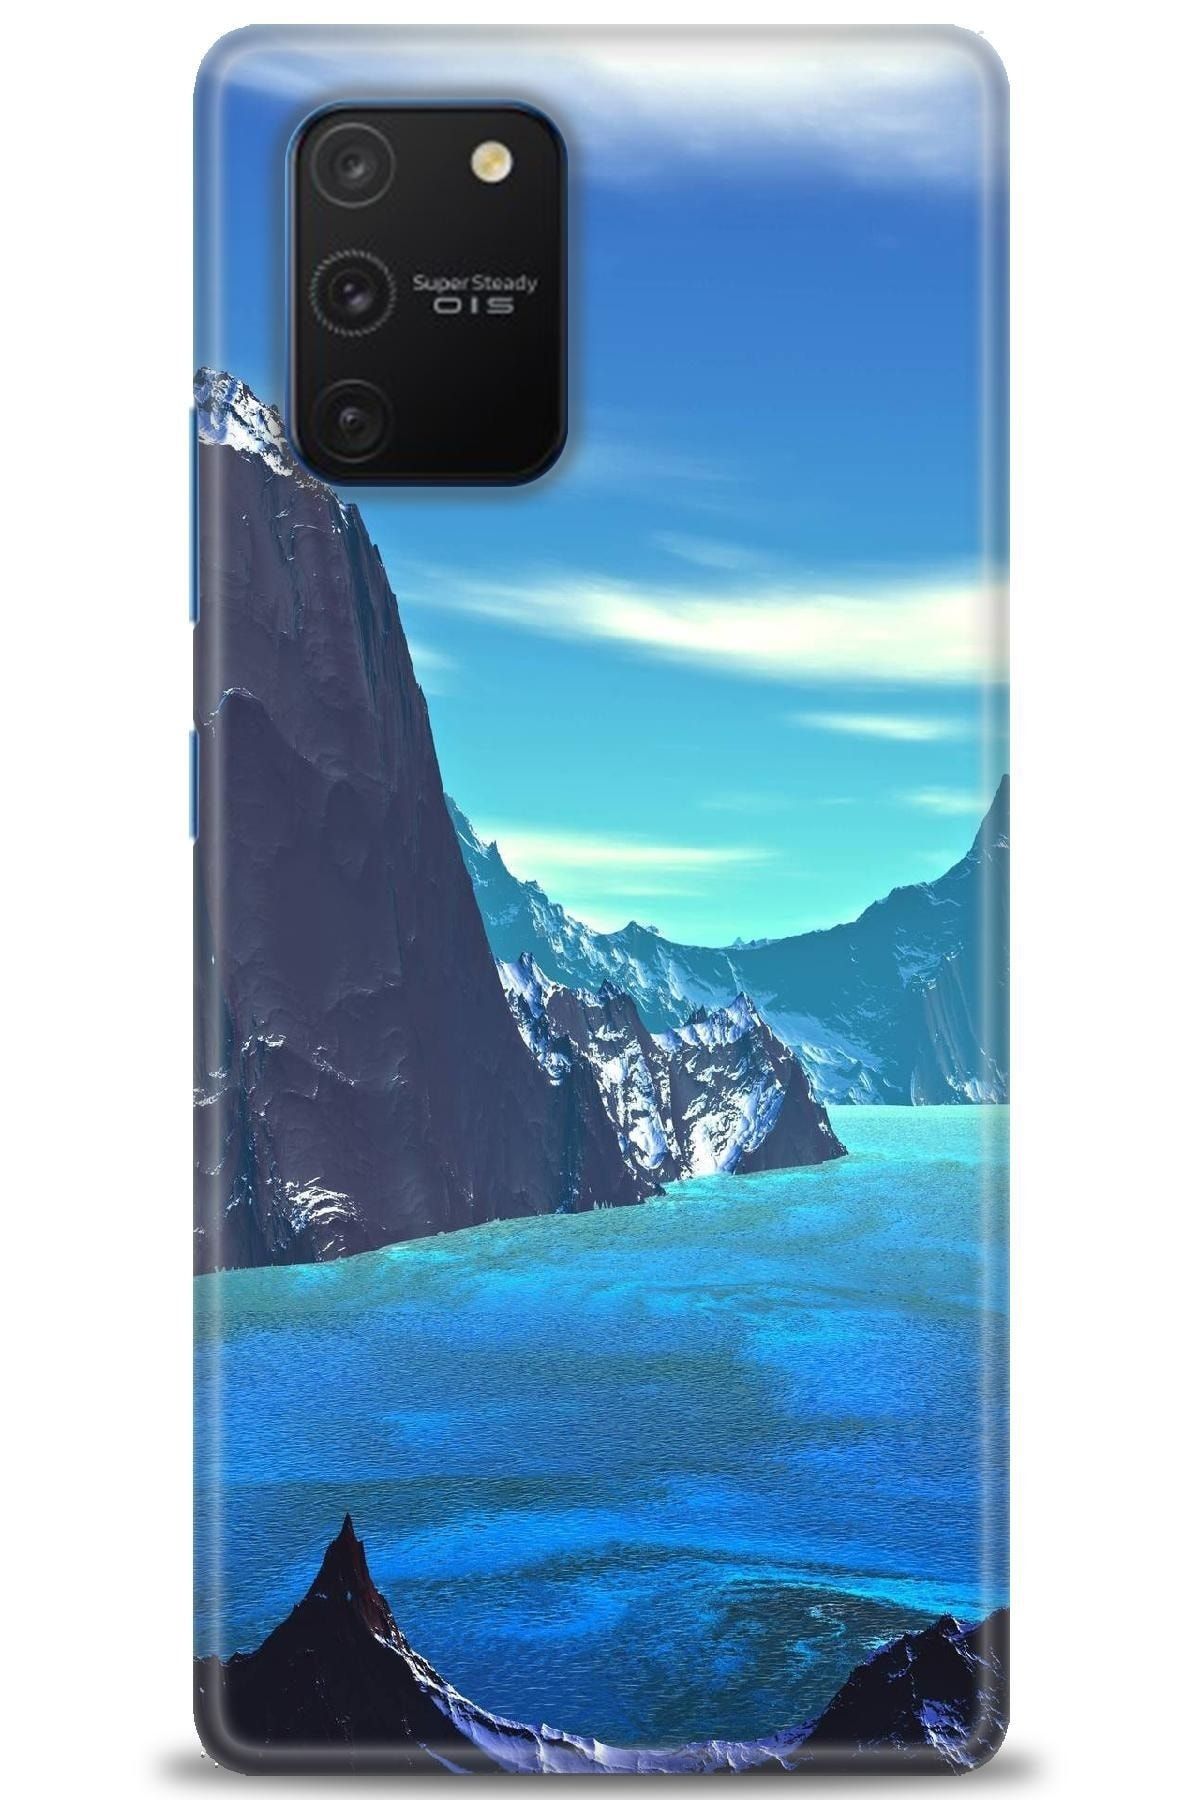 Noprin Samsung Galaxy A91 / S10 Lite Kılıf Hd Baskılı Kılıf - Lake 8k + Nano Micro Ekran Koruyucu